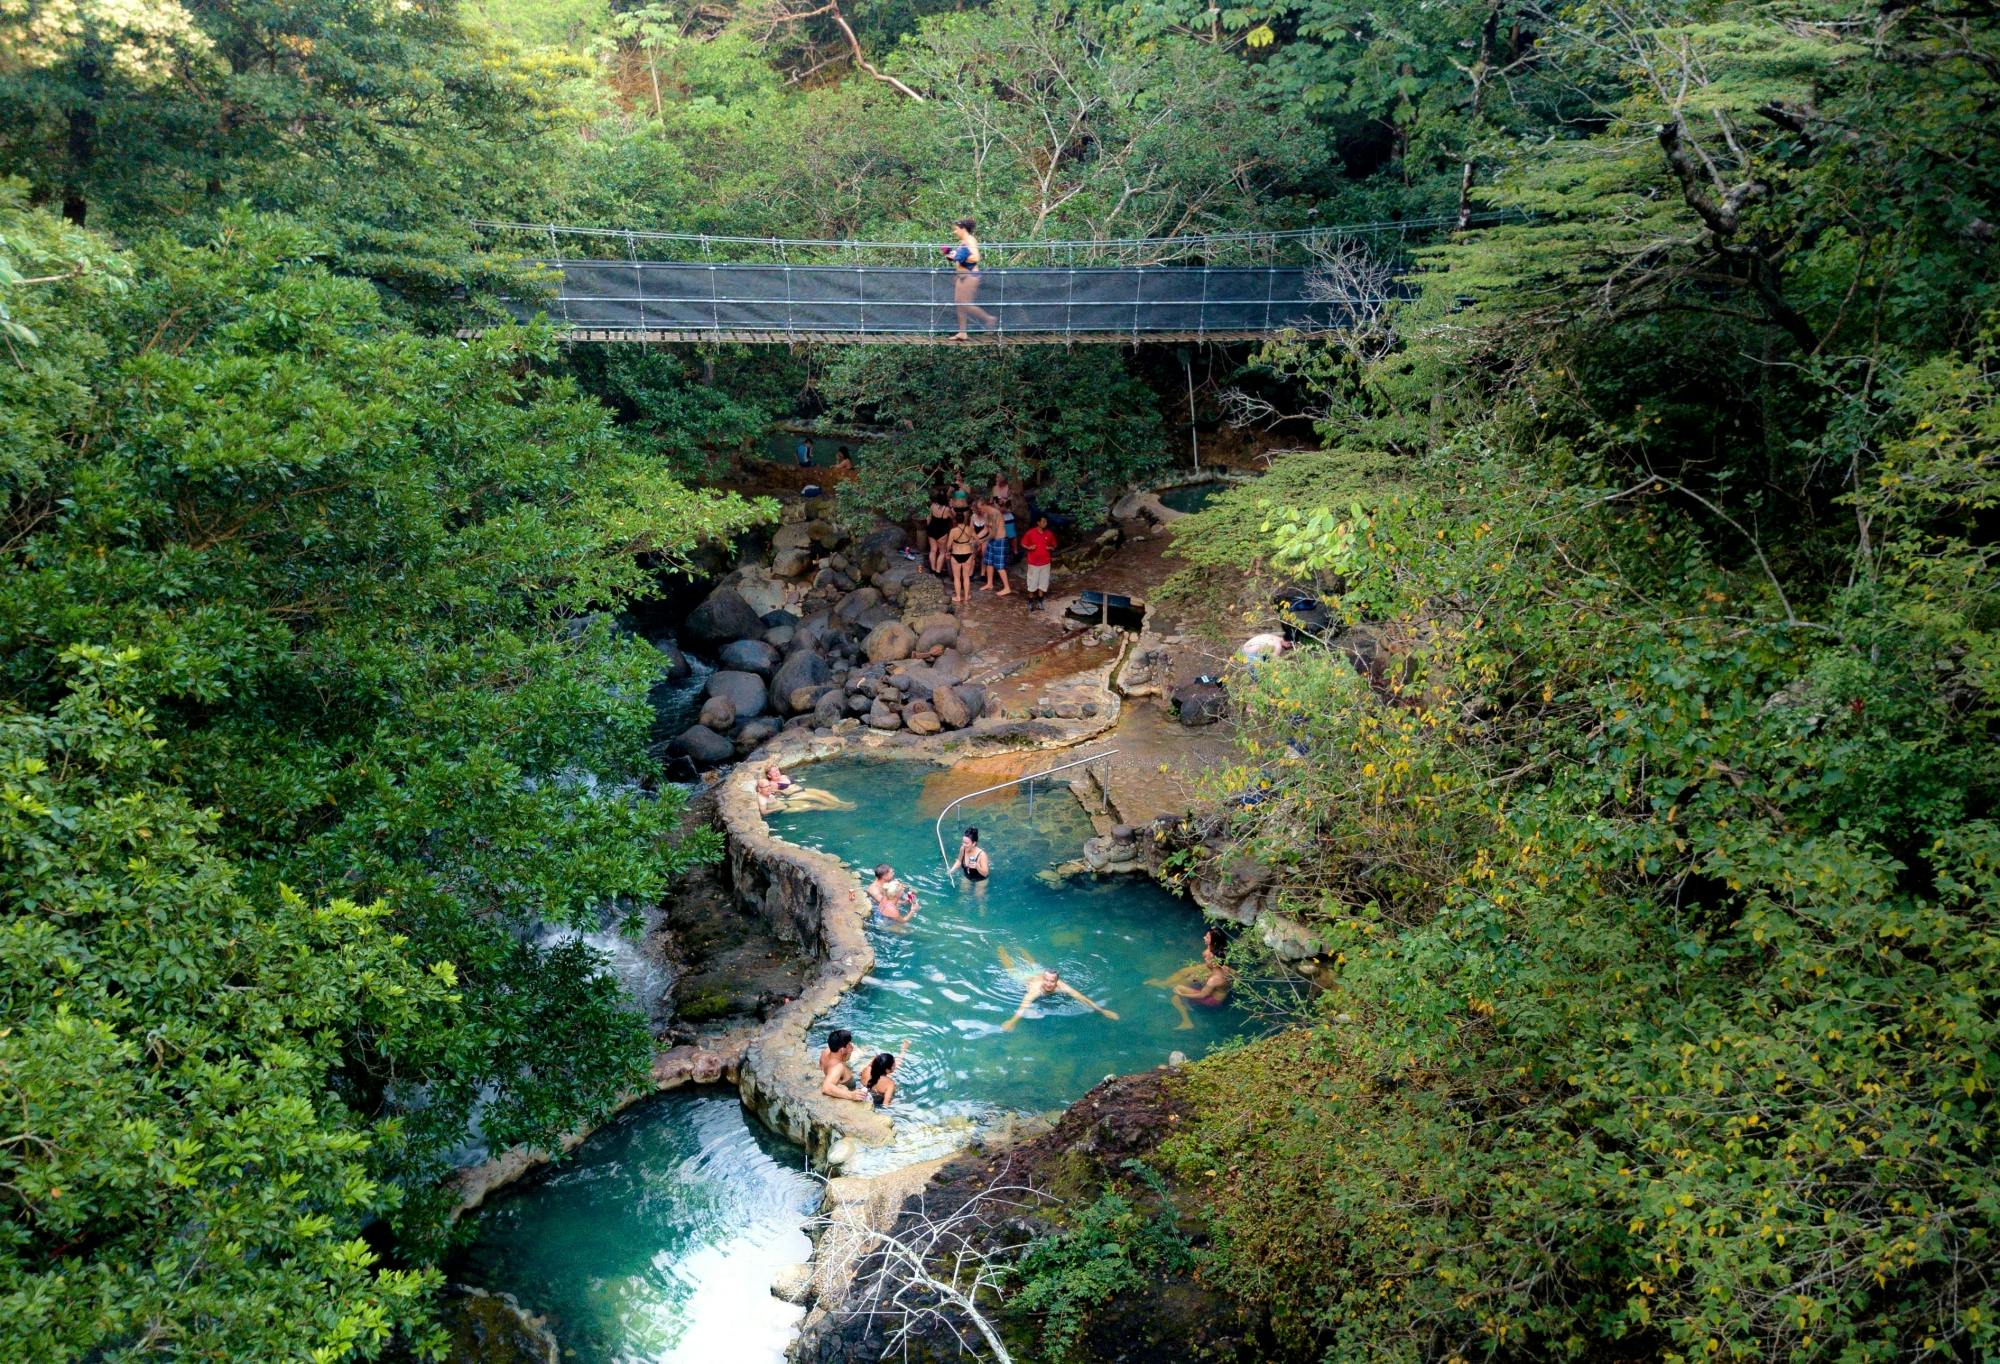 Esperienza di benessere e cascata in Costa Rica